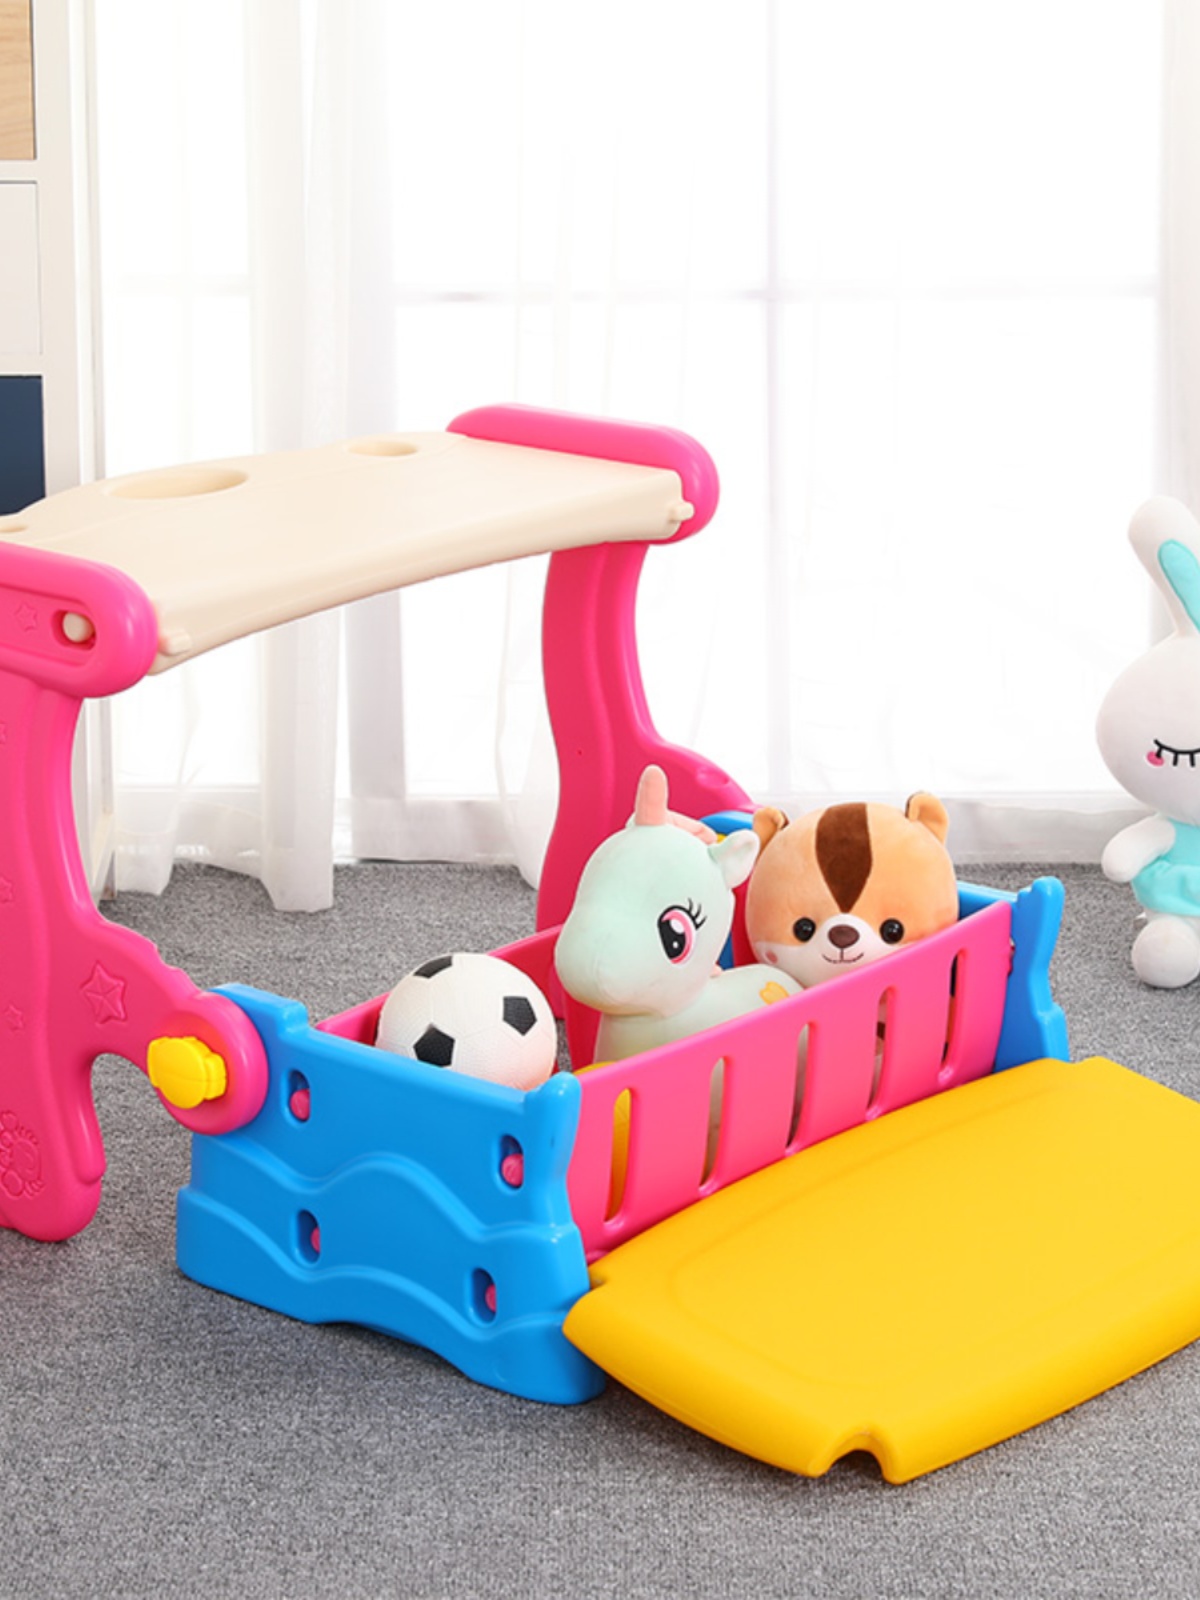 新品儿童椅子靠背椅塑料加厚宝宝便携餐椅多功能可折叠储物凳子沙